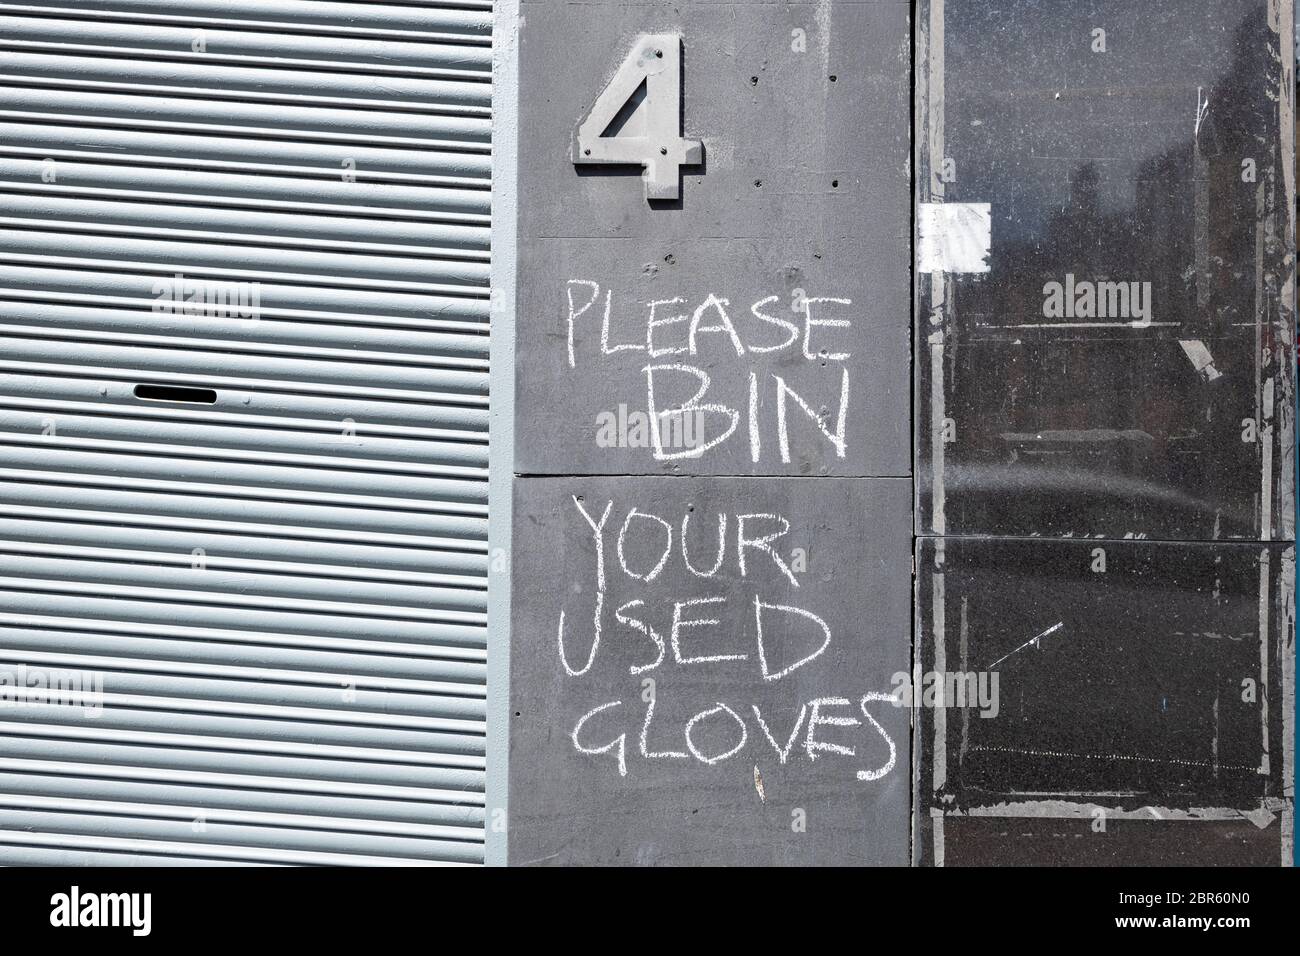 Bitte entsorgen Sie Ihre gebrauchten Handschuhe Kreide Graffiti während Coronavirus Pandemie, Shawlands, Glasgow, Schottland, Großbritannien Stockfoto